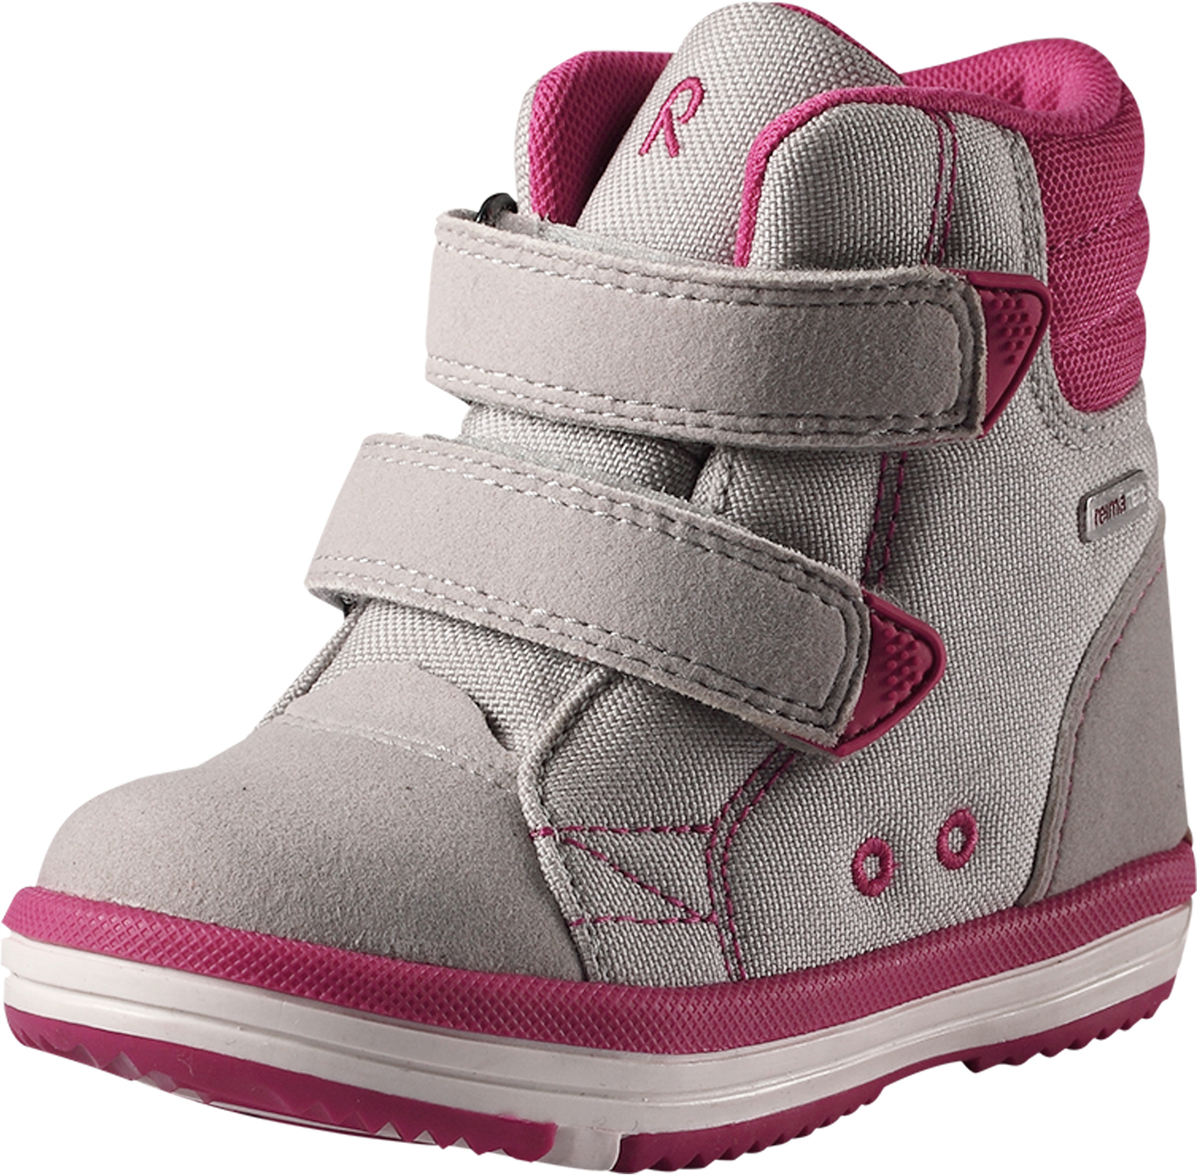 Ботинки детские Reima, цвет: розовый, серый. 5693449140. Размер 29